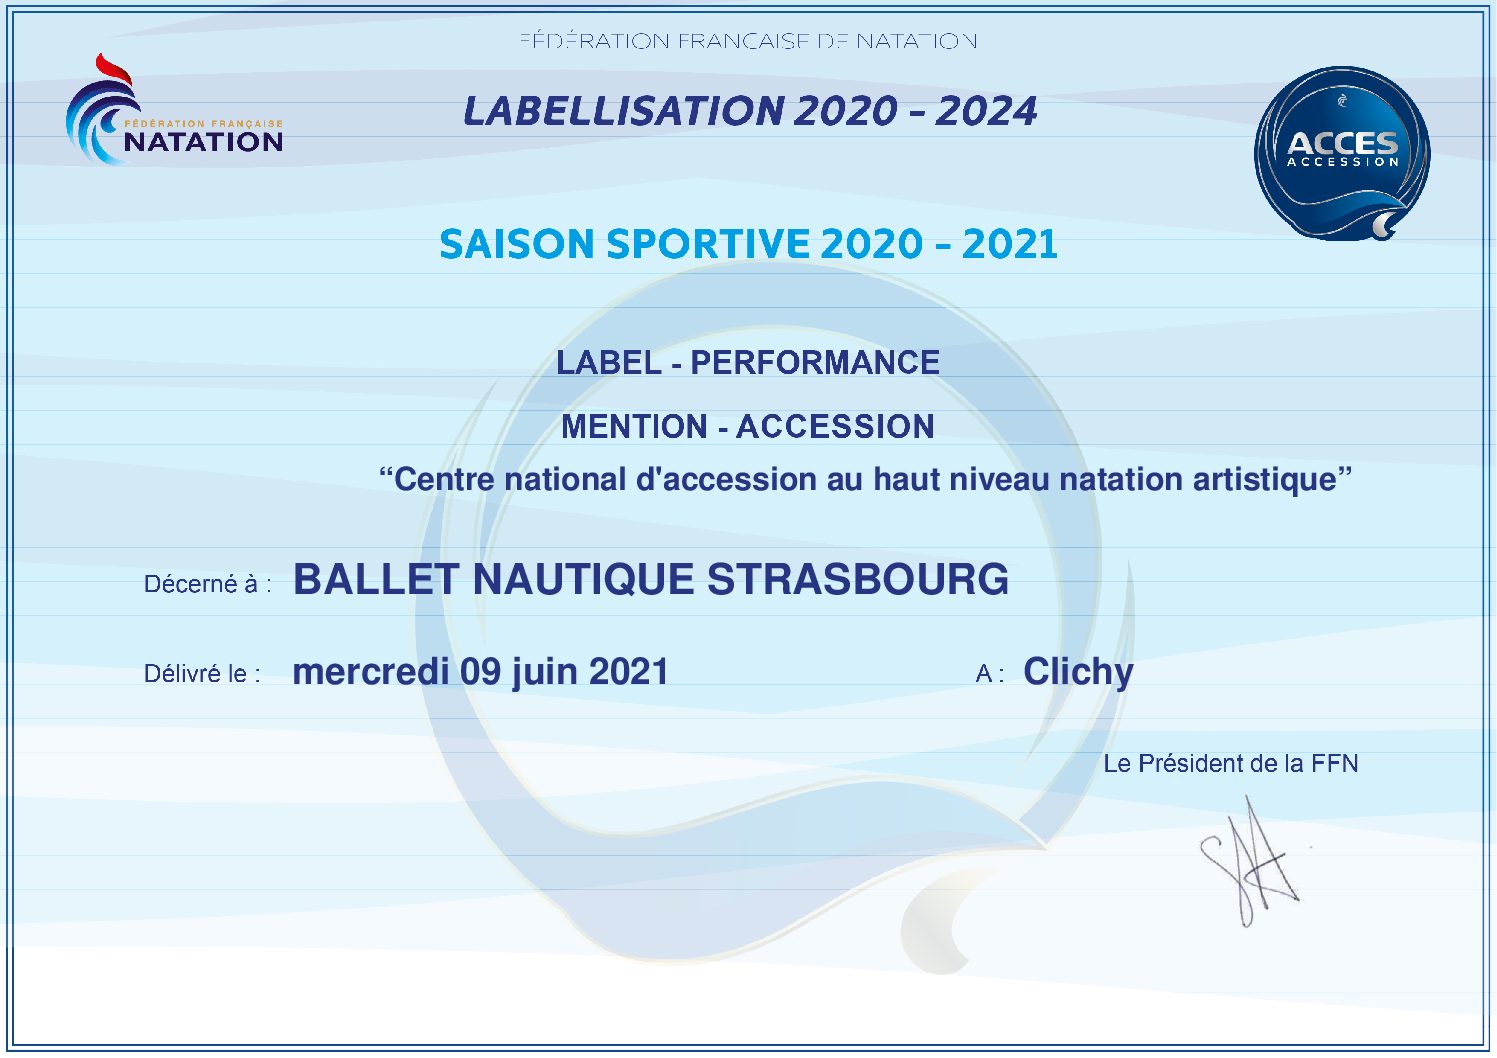 Label Performance, mention Accession pour le BNS, Centre National d’Accession au Haut Niveau Natation Artistique